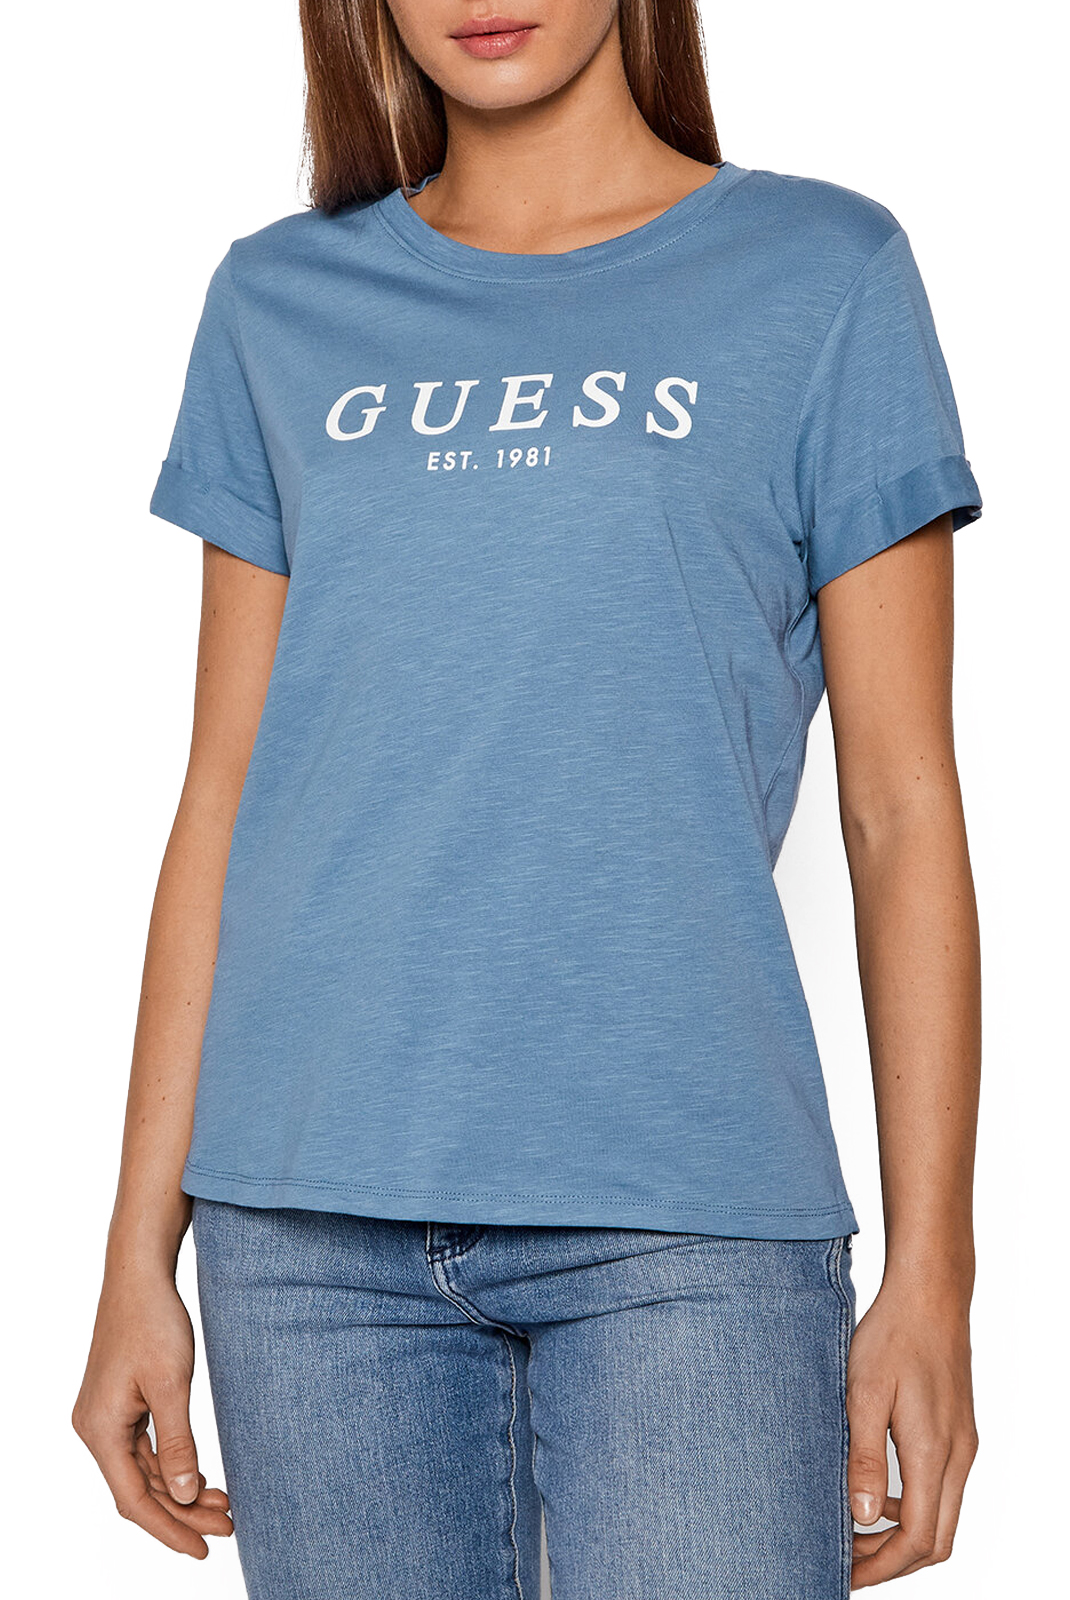 Tee-Shirt bleu regular fit W0gi69 - Guess Femme